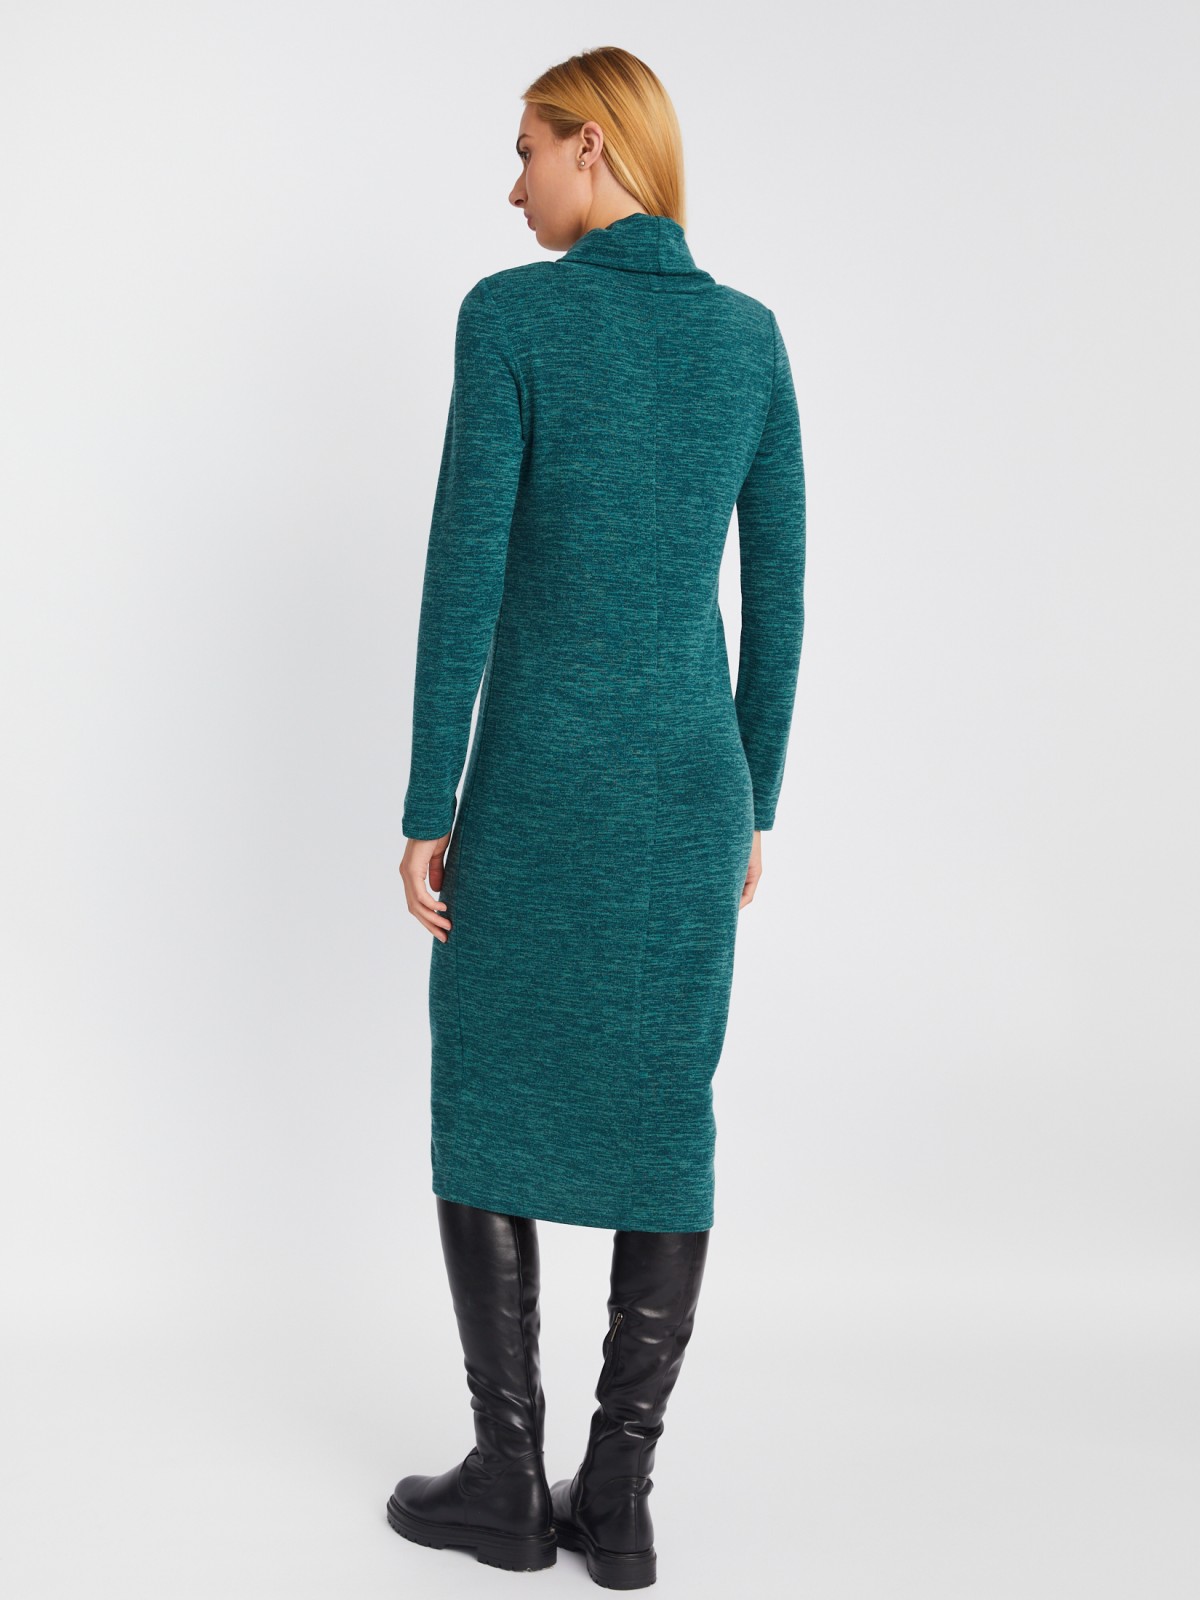 Трикотажное платье-свитер длины миди с высоким горлом zolla 02334819F062, цвет мятный, размер XS - фото 6